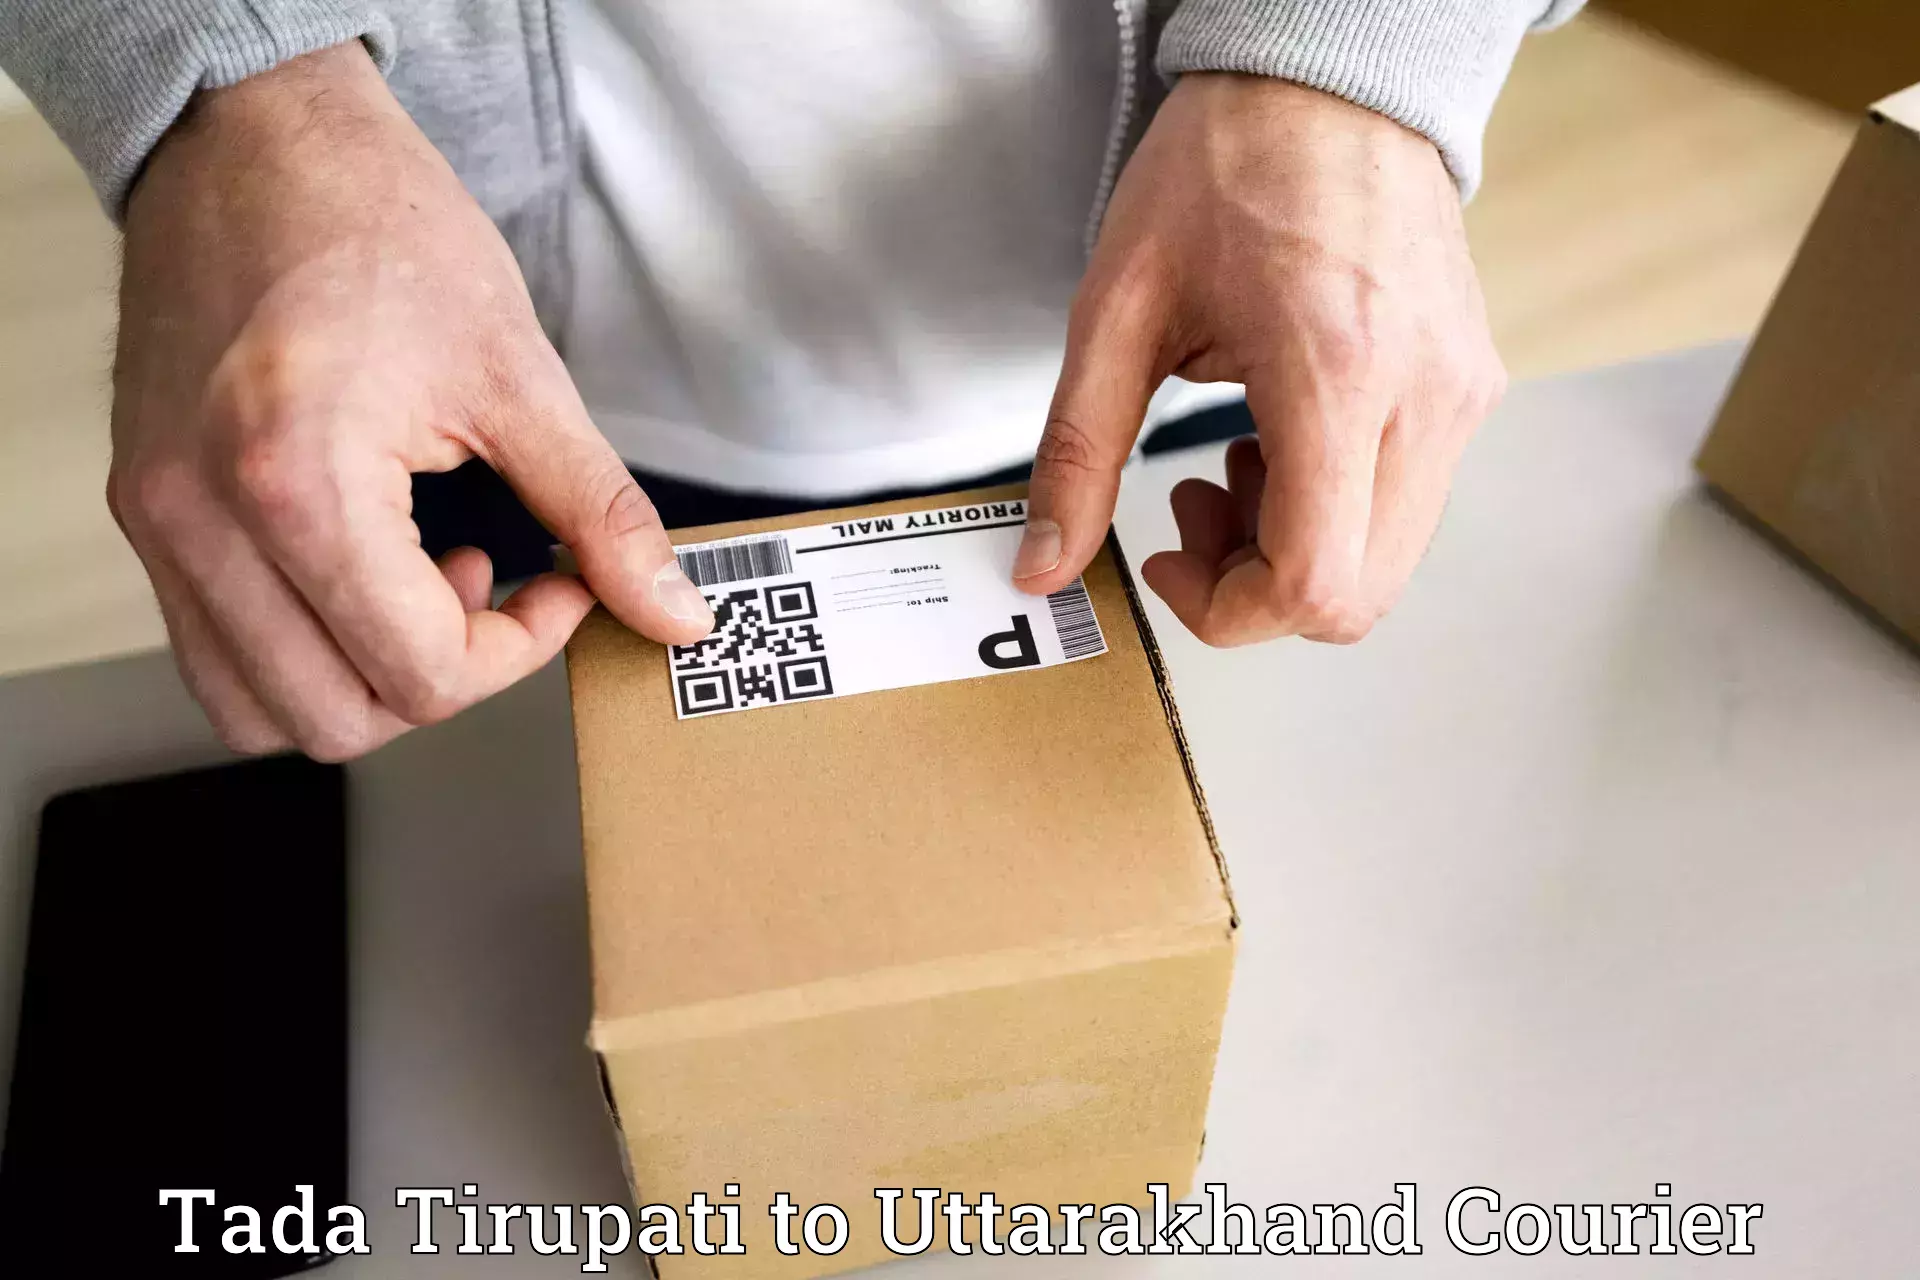 24/7 courier service Tada Tirupati to Uttarkashi